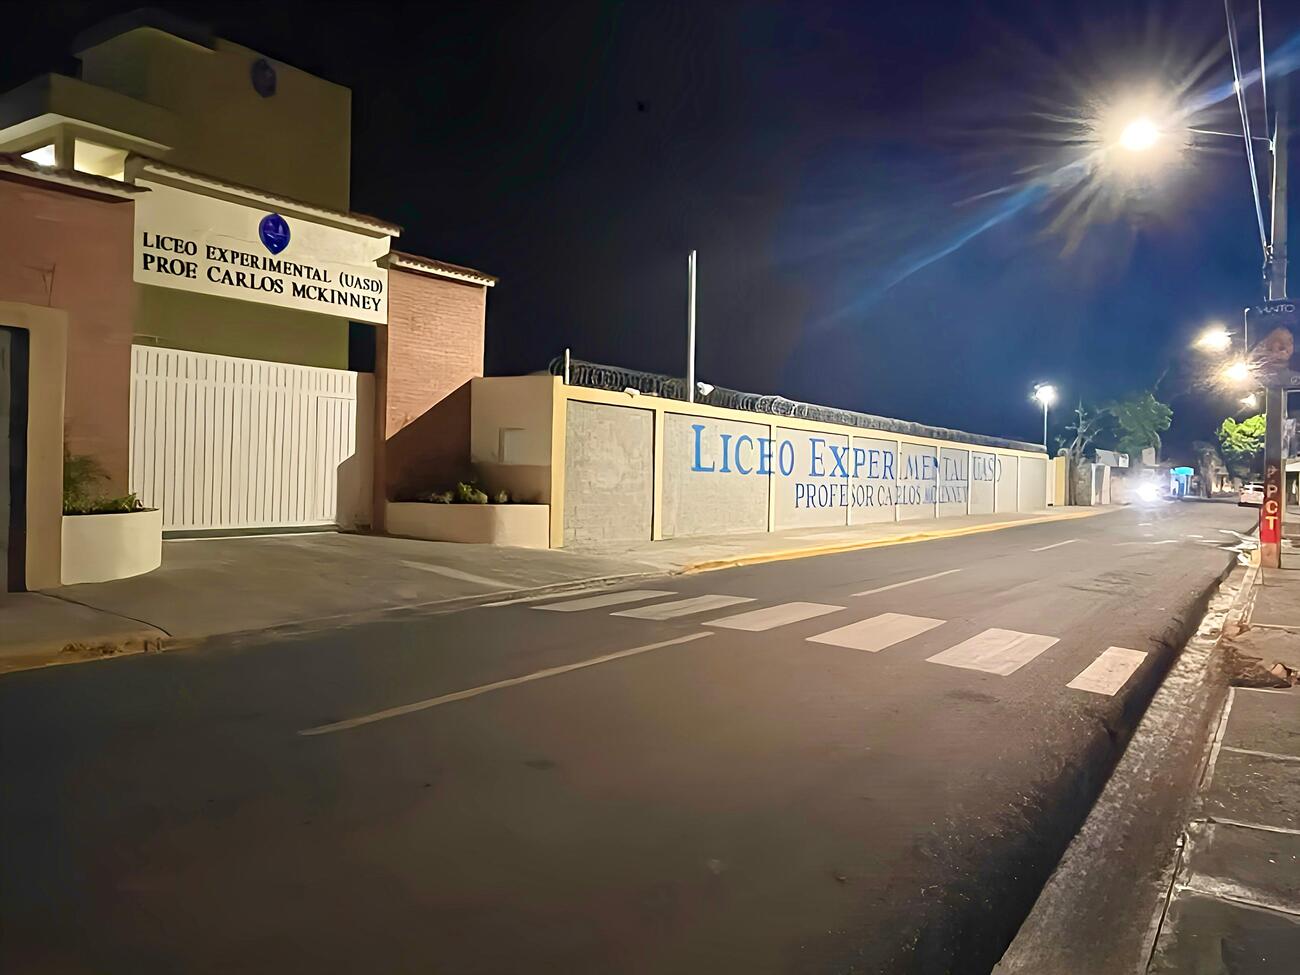 REPÚBLICA DOMINICANA: Edesur ilumina calles periféricas del nuevo liceo experimental de la UASD, en Baní